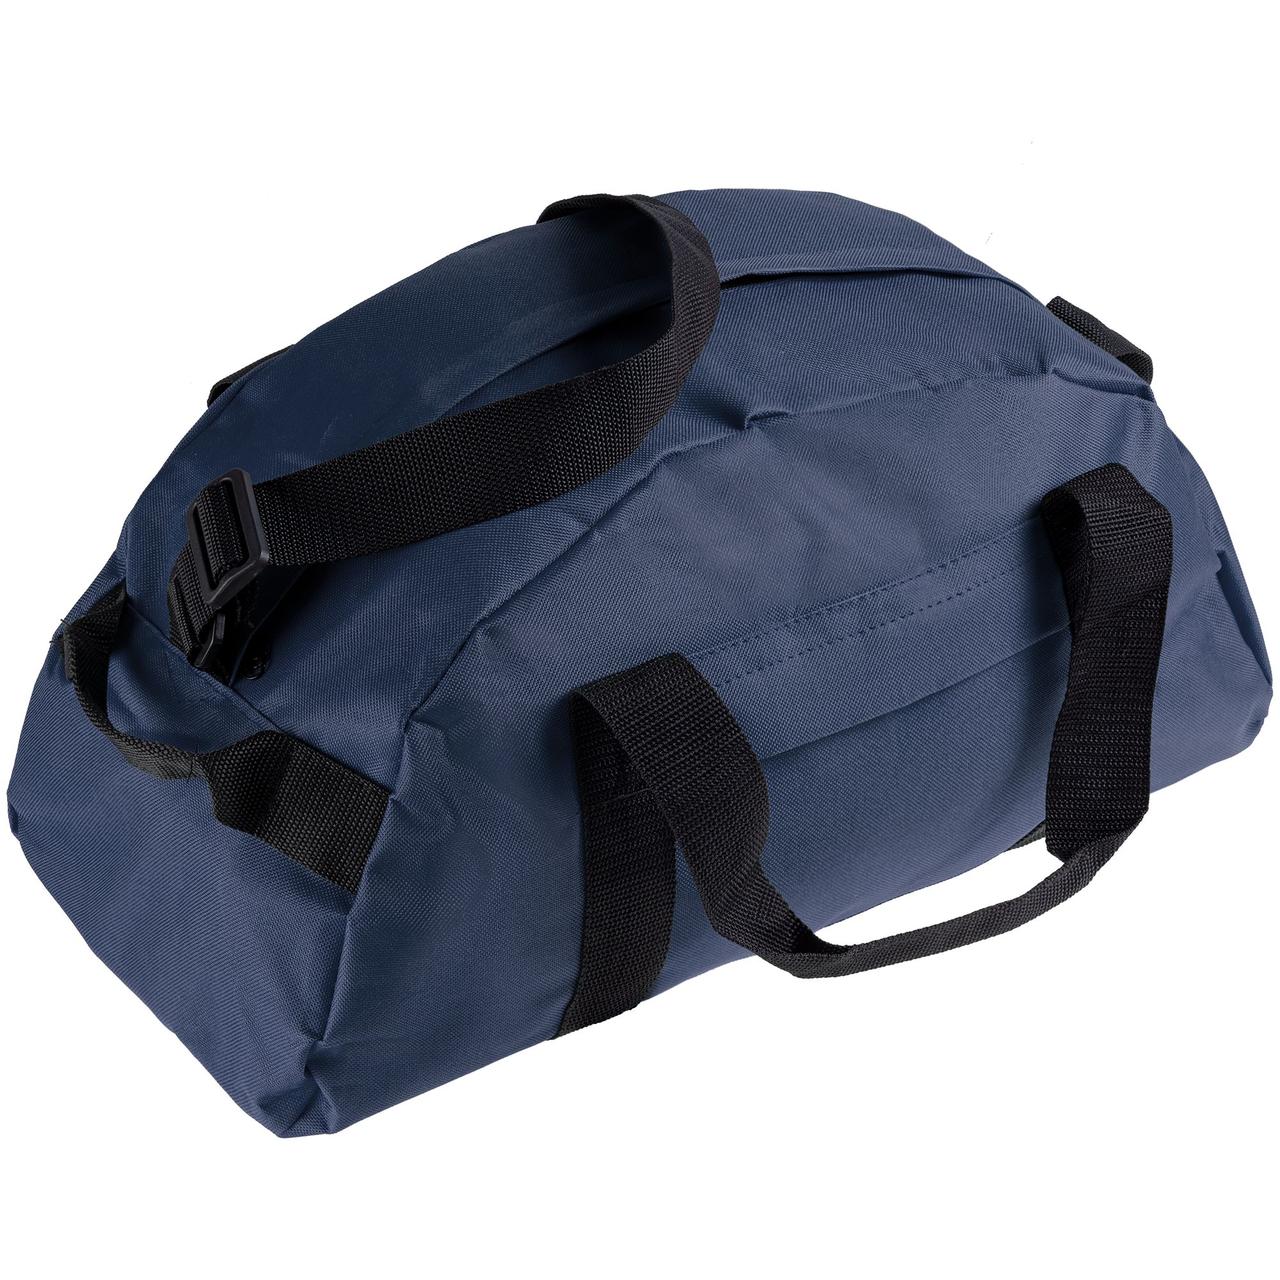 Спортивная сумка Portage, темно-синяя (артикул 4778.40)